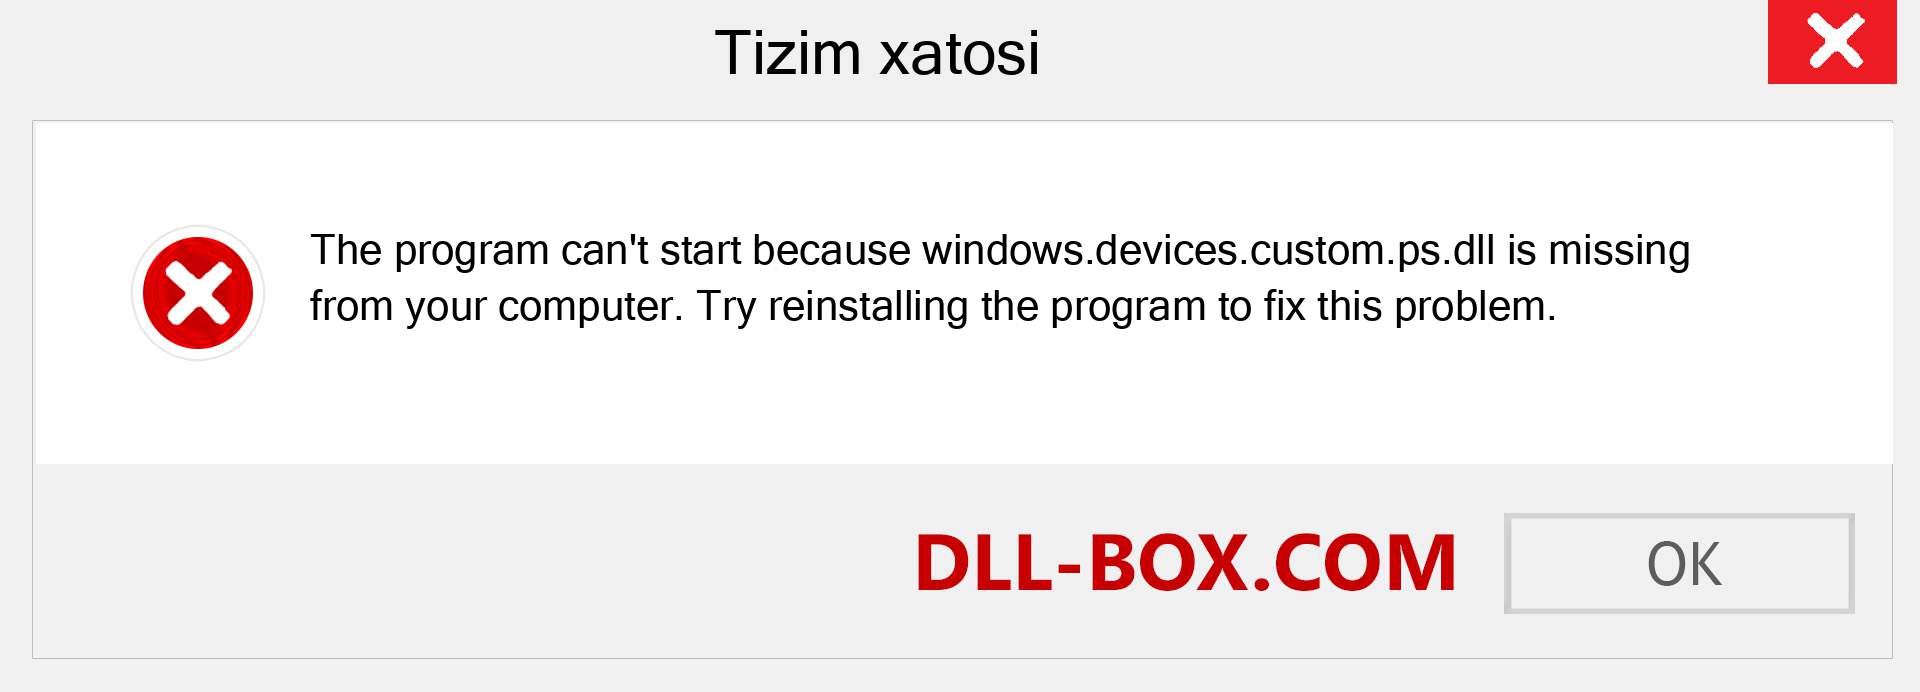 windows.devices.custom.ps.dll fayli yo'qolganmi?. Windows 7, 8, 10 uchun yuklab olish - Windowsda windows.devices.custom.ps dll etishmayotgan xatoni tuzating, rasmlar, rasmlar